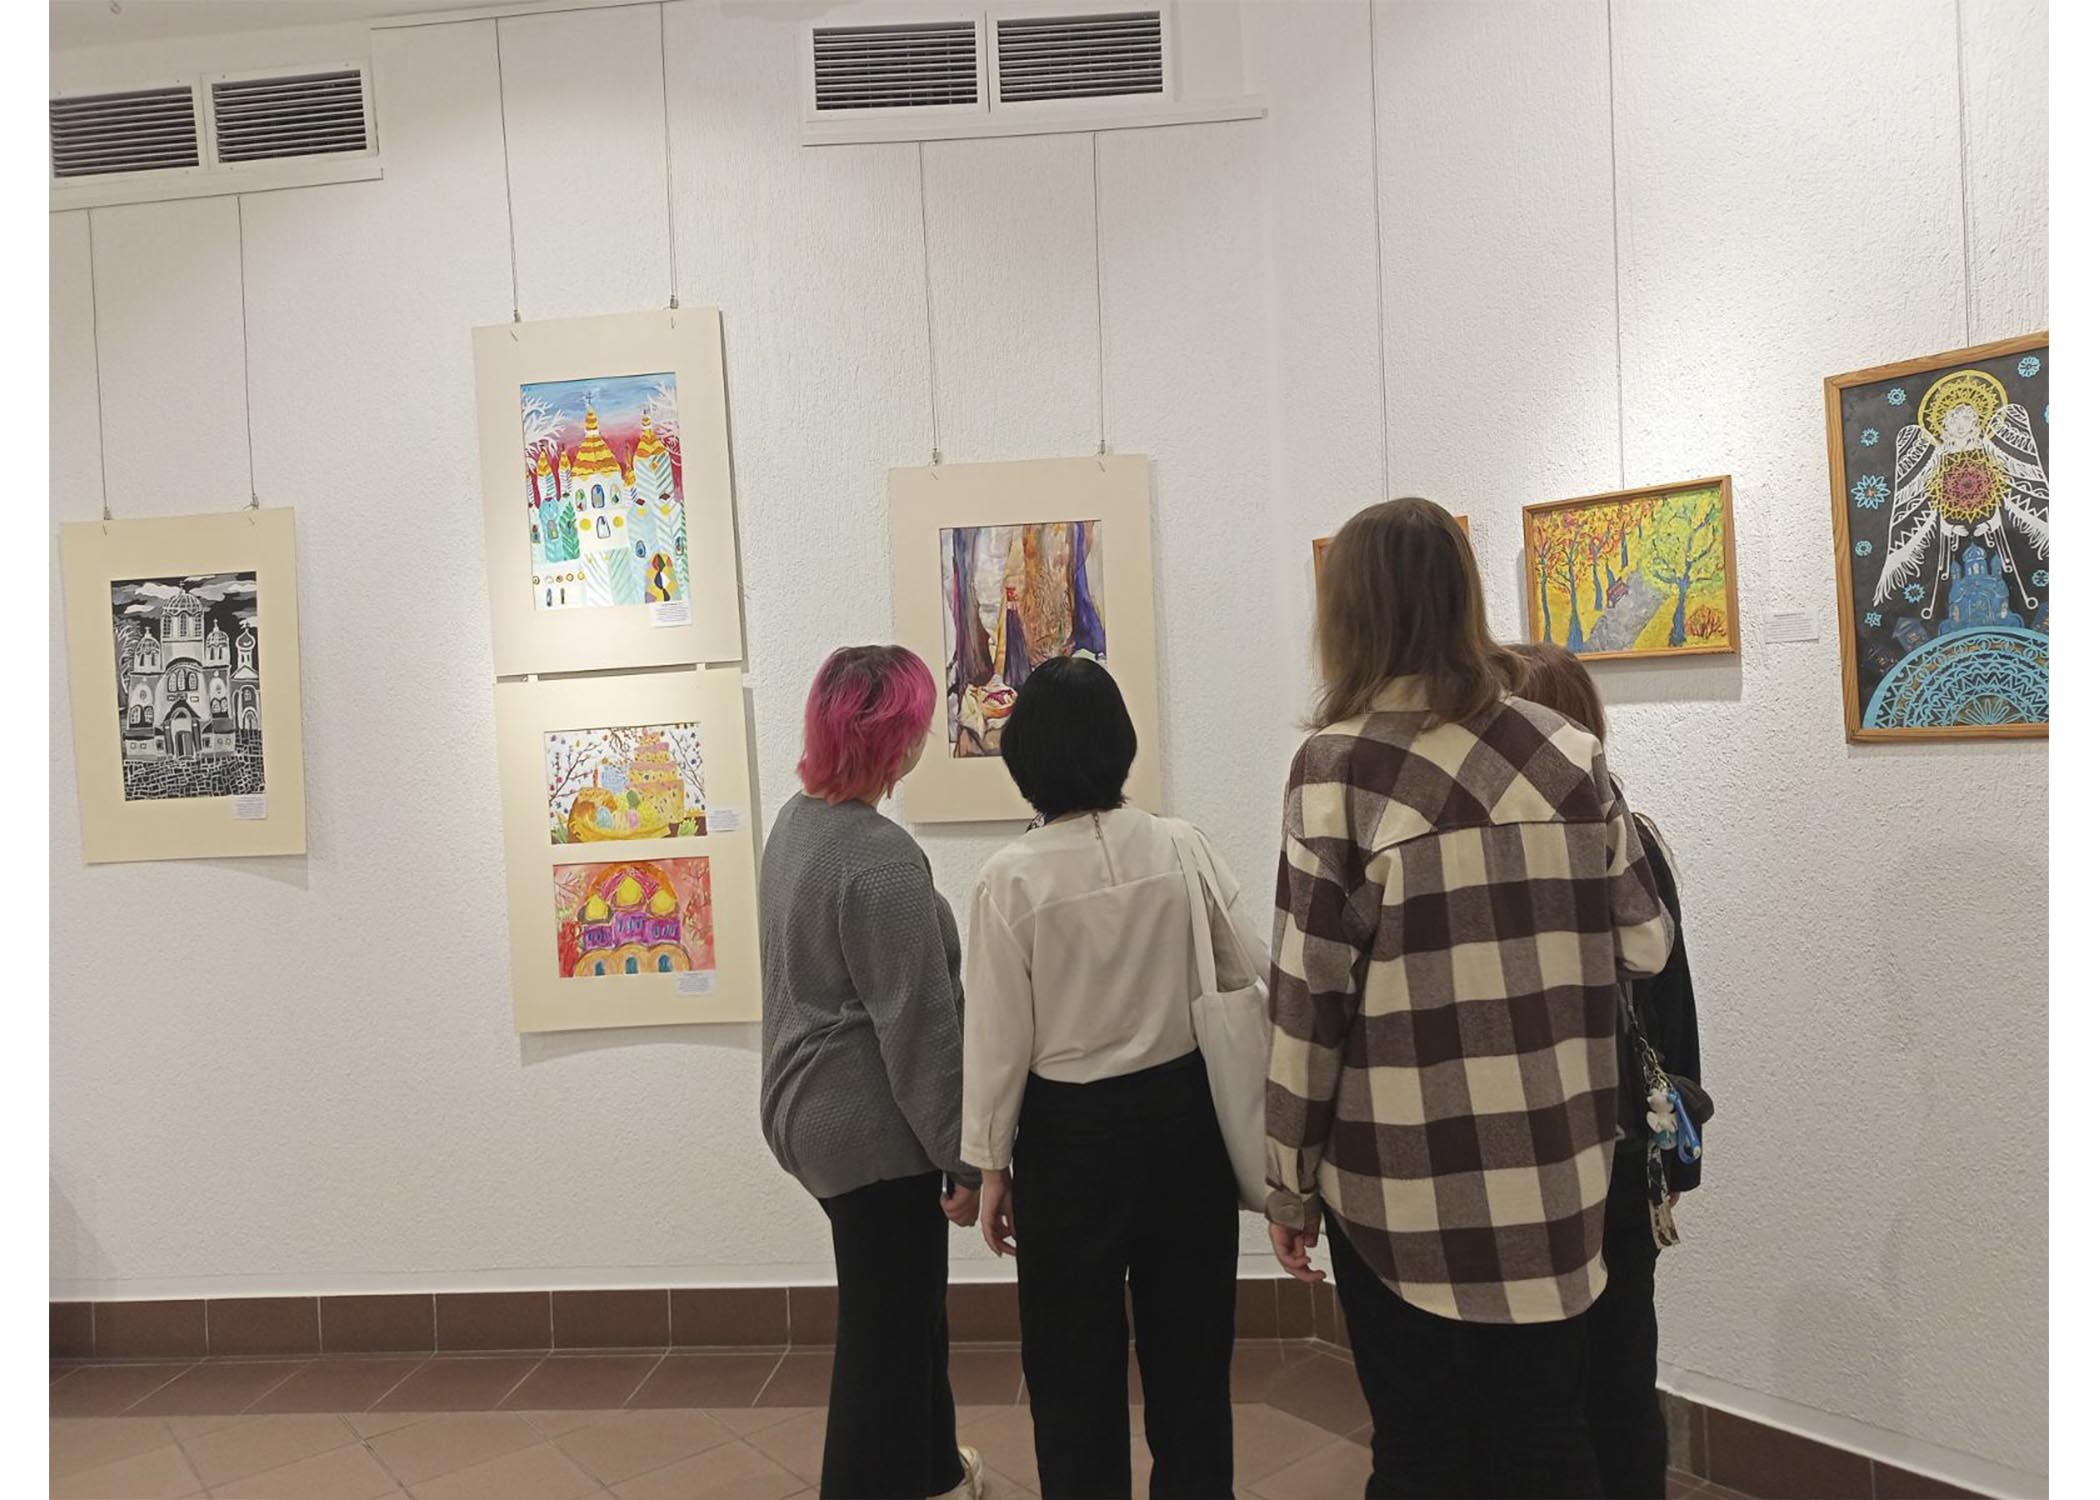 18 ноября учащиеся группы 41 посетили выставку "Прорастание" флориста Антух Юлии и скульптора Галузы Сергея. 